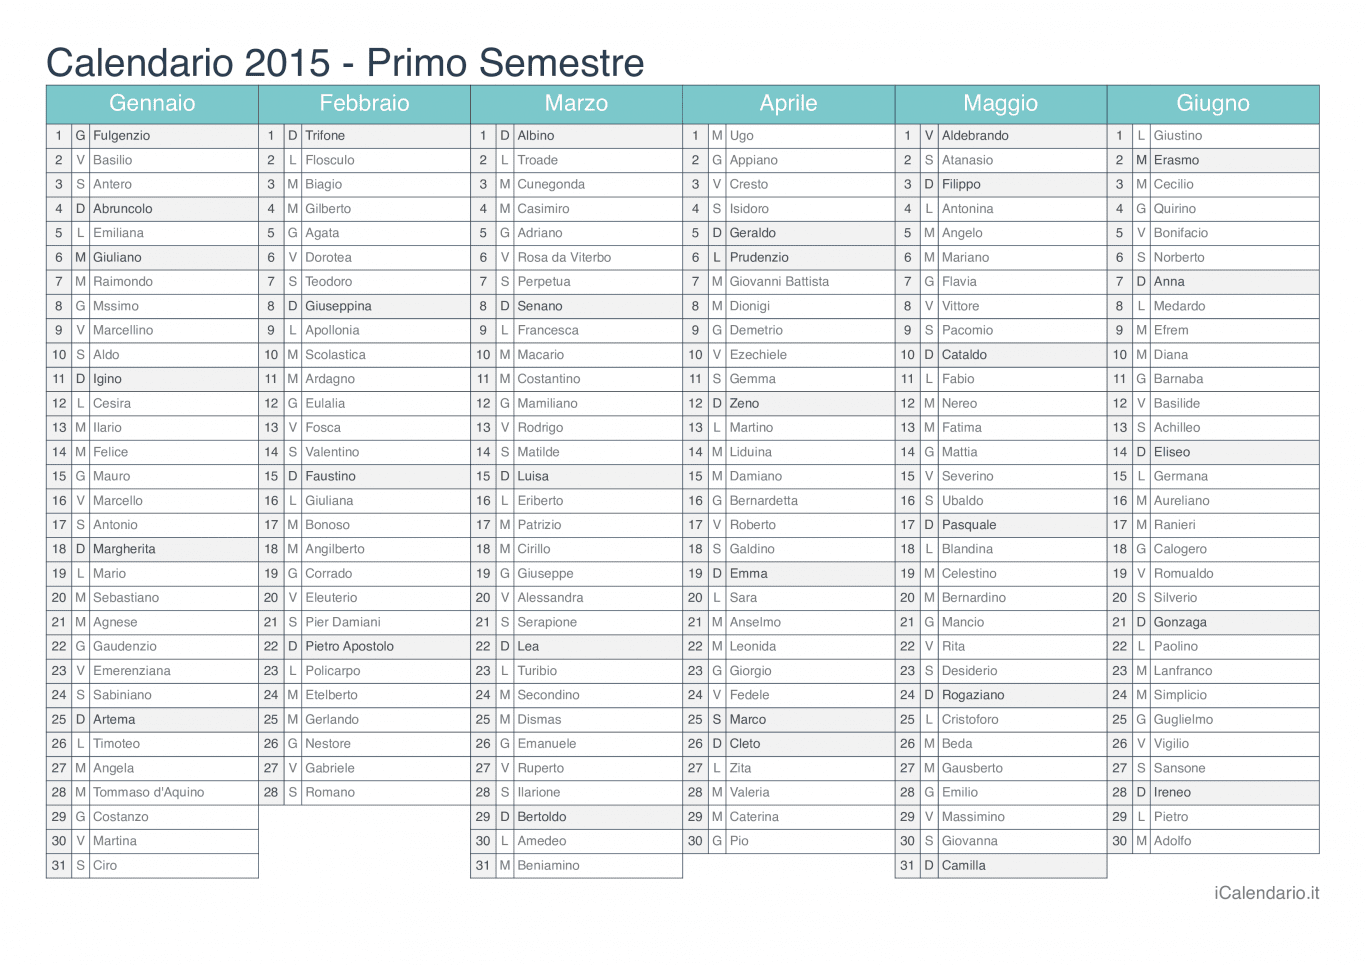 Calendario semestrale 2015 con santi e festivi - Turchese